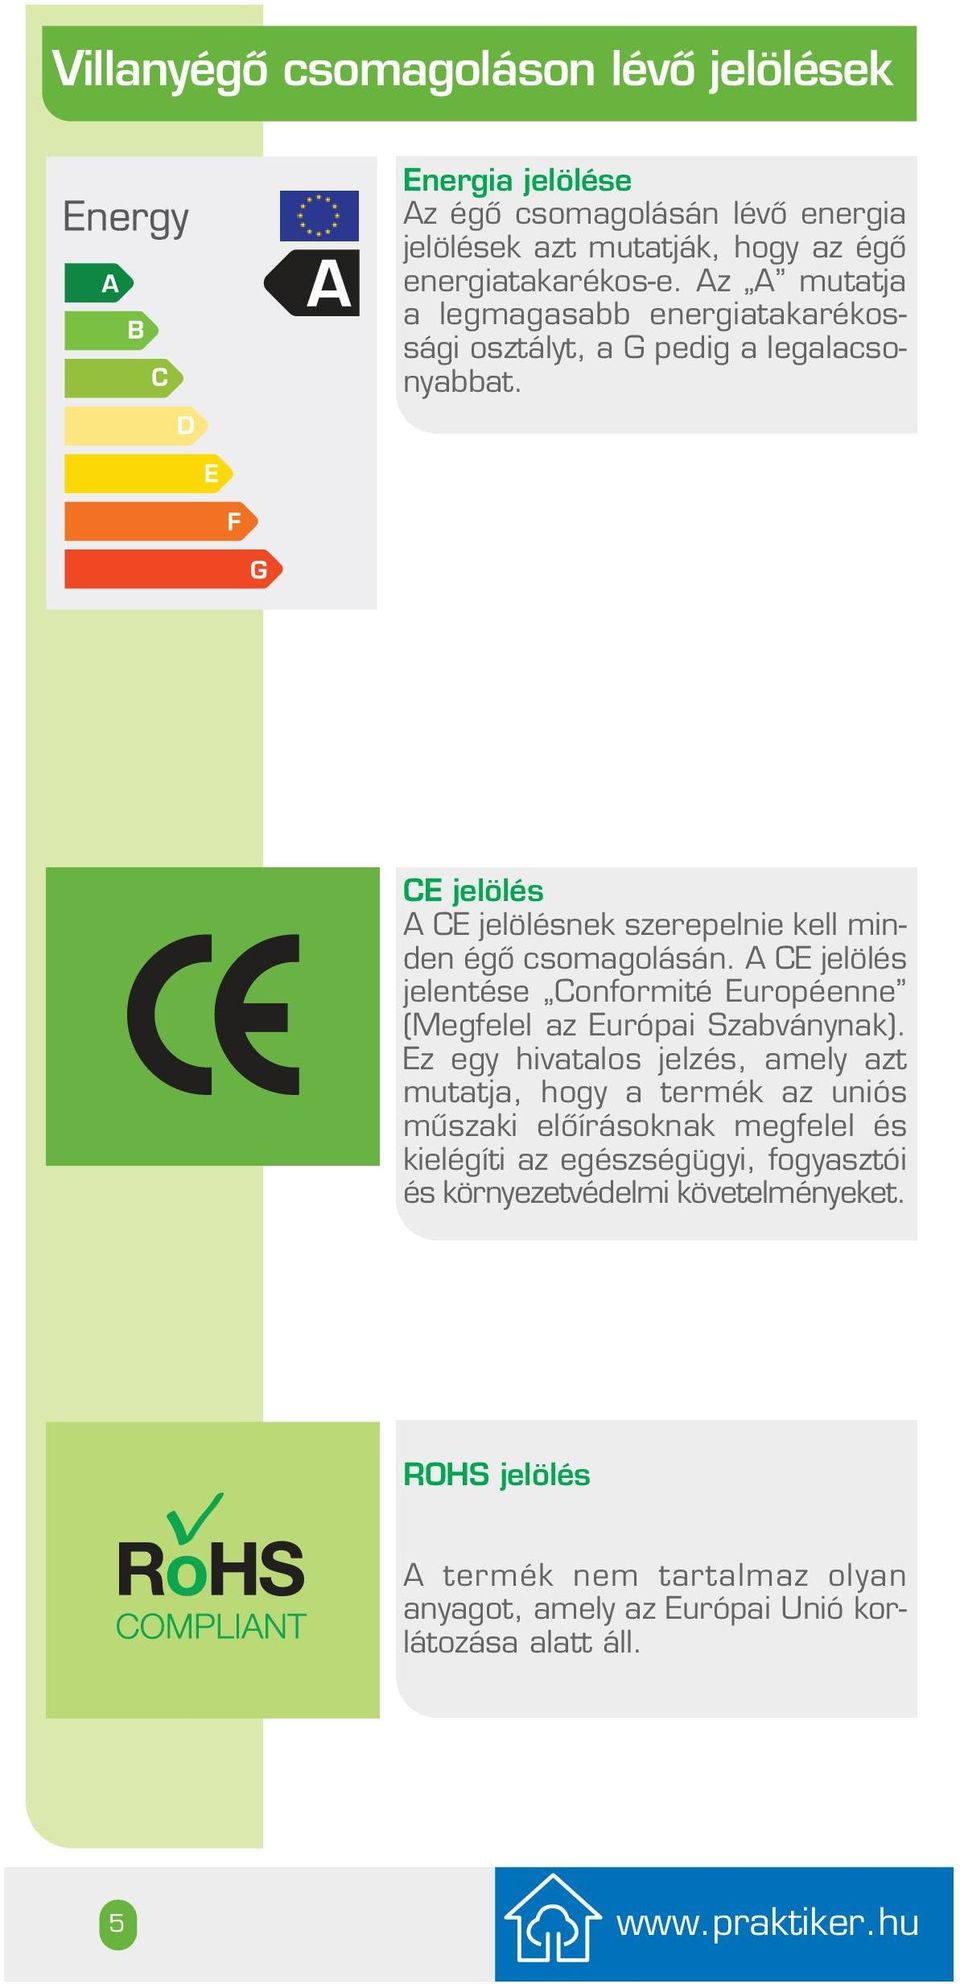 A CE jelölés jelentése Conformité Européenne (Megfelel az Európai Szabványnak).